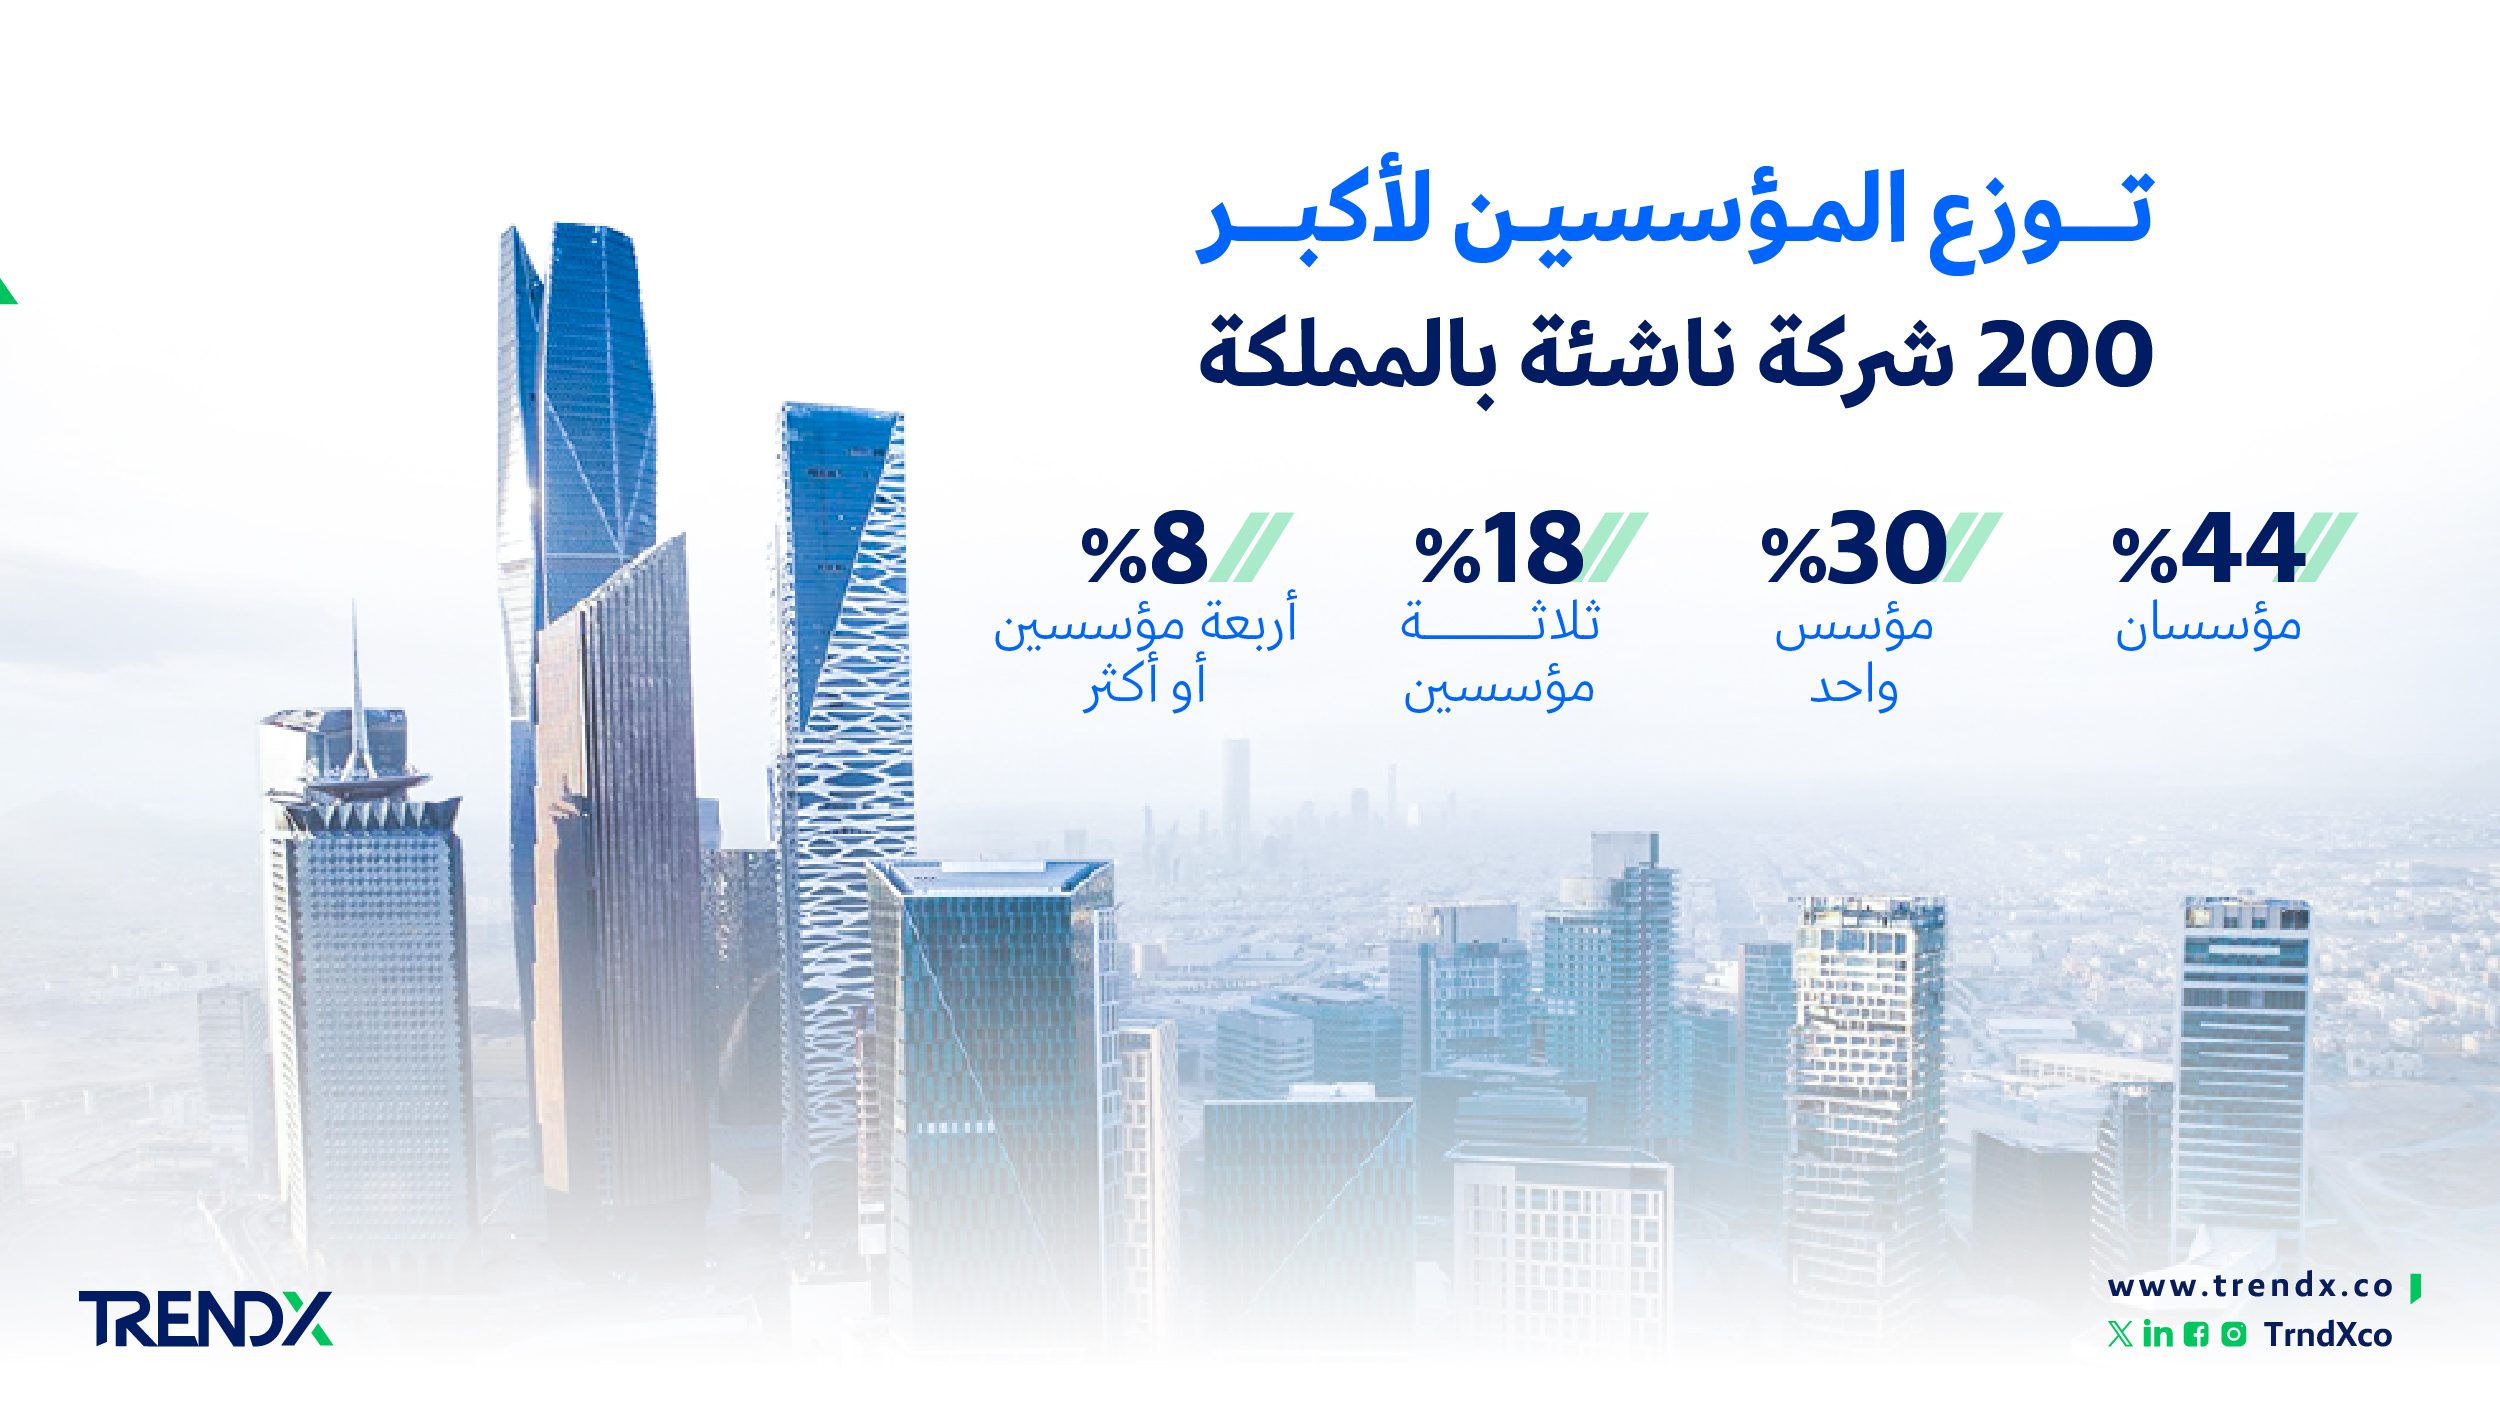 توزع المؤسسين لأكبر 200 شركة ناشئة بالمملكة ثروات السعوديين في الفترة من عام 2000 إلى 2022 01